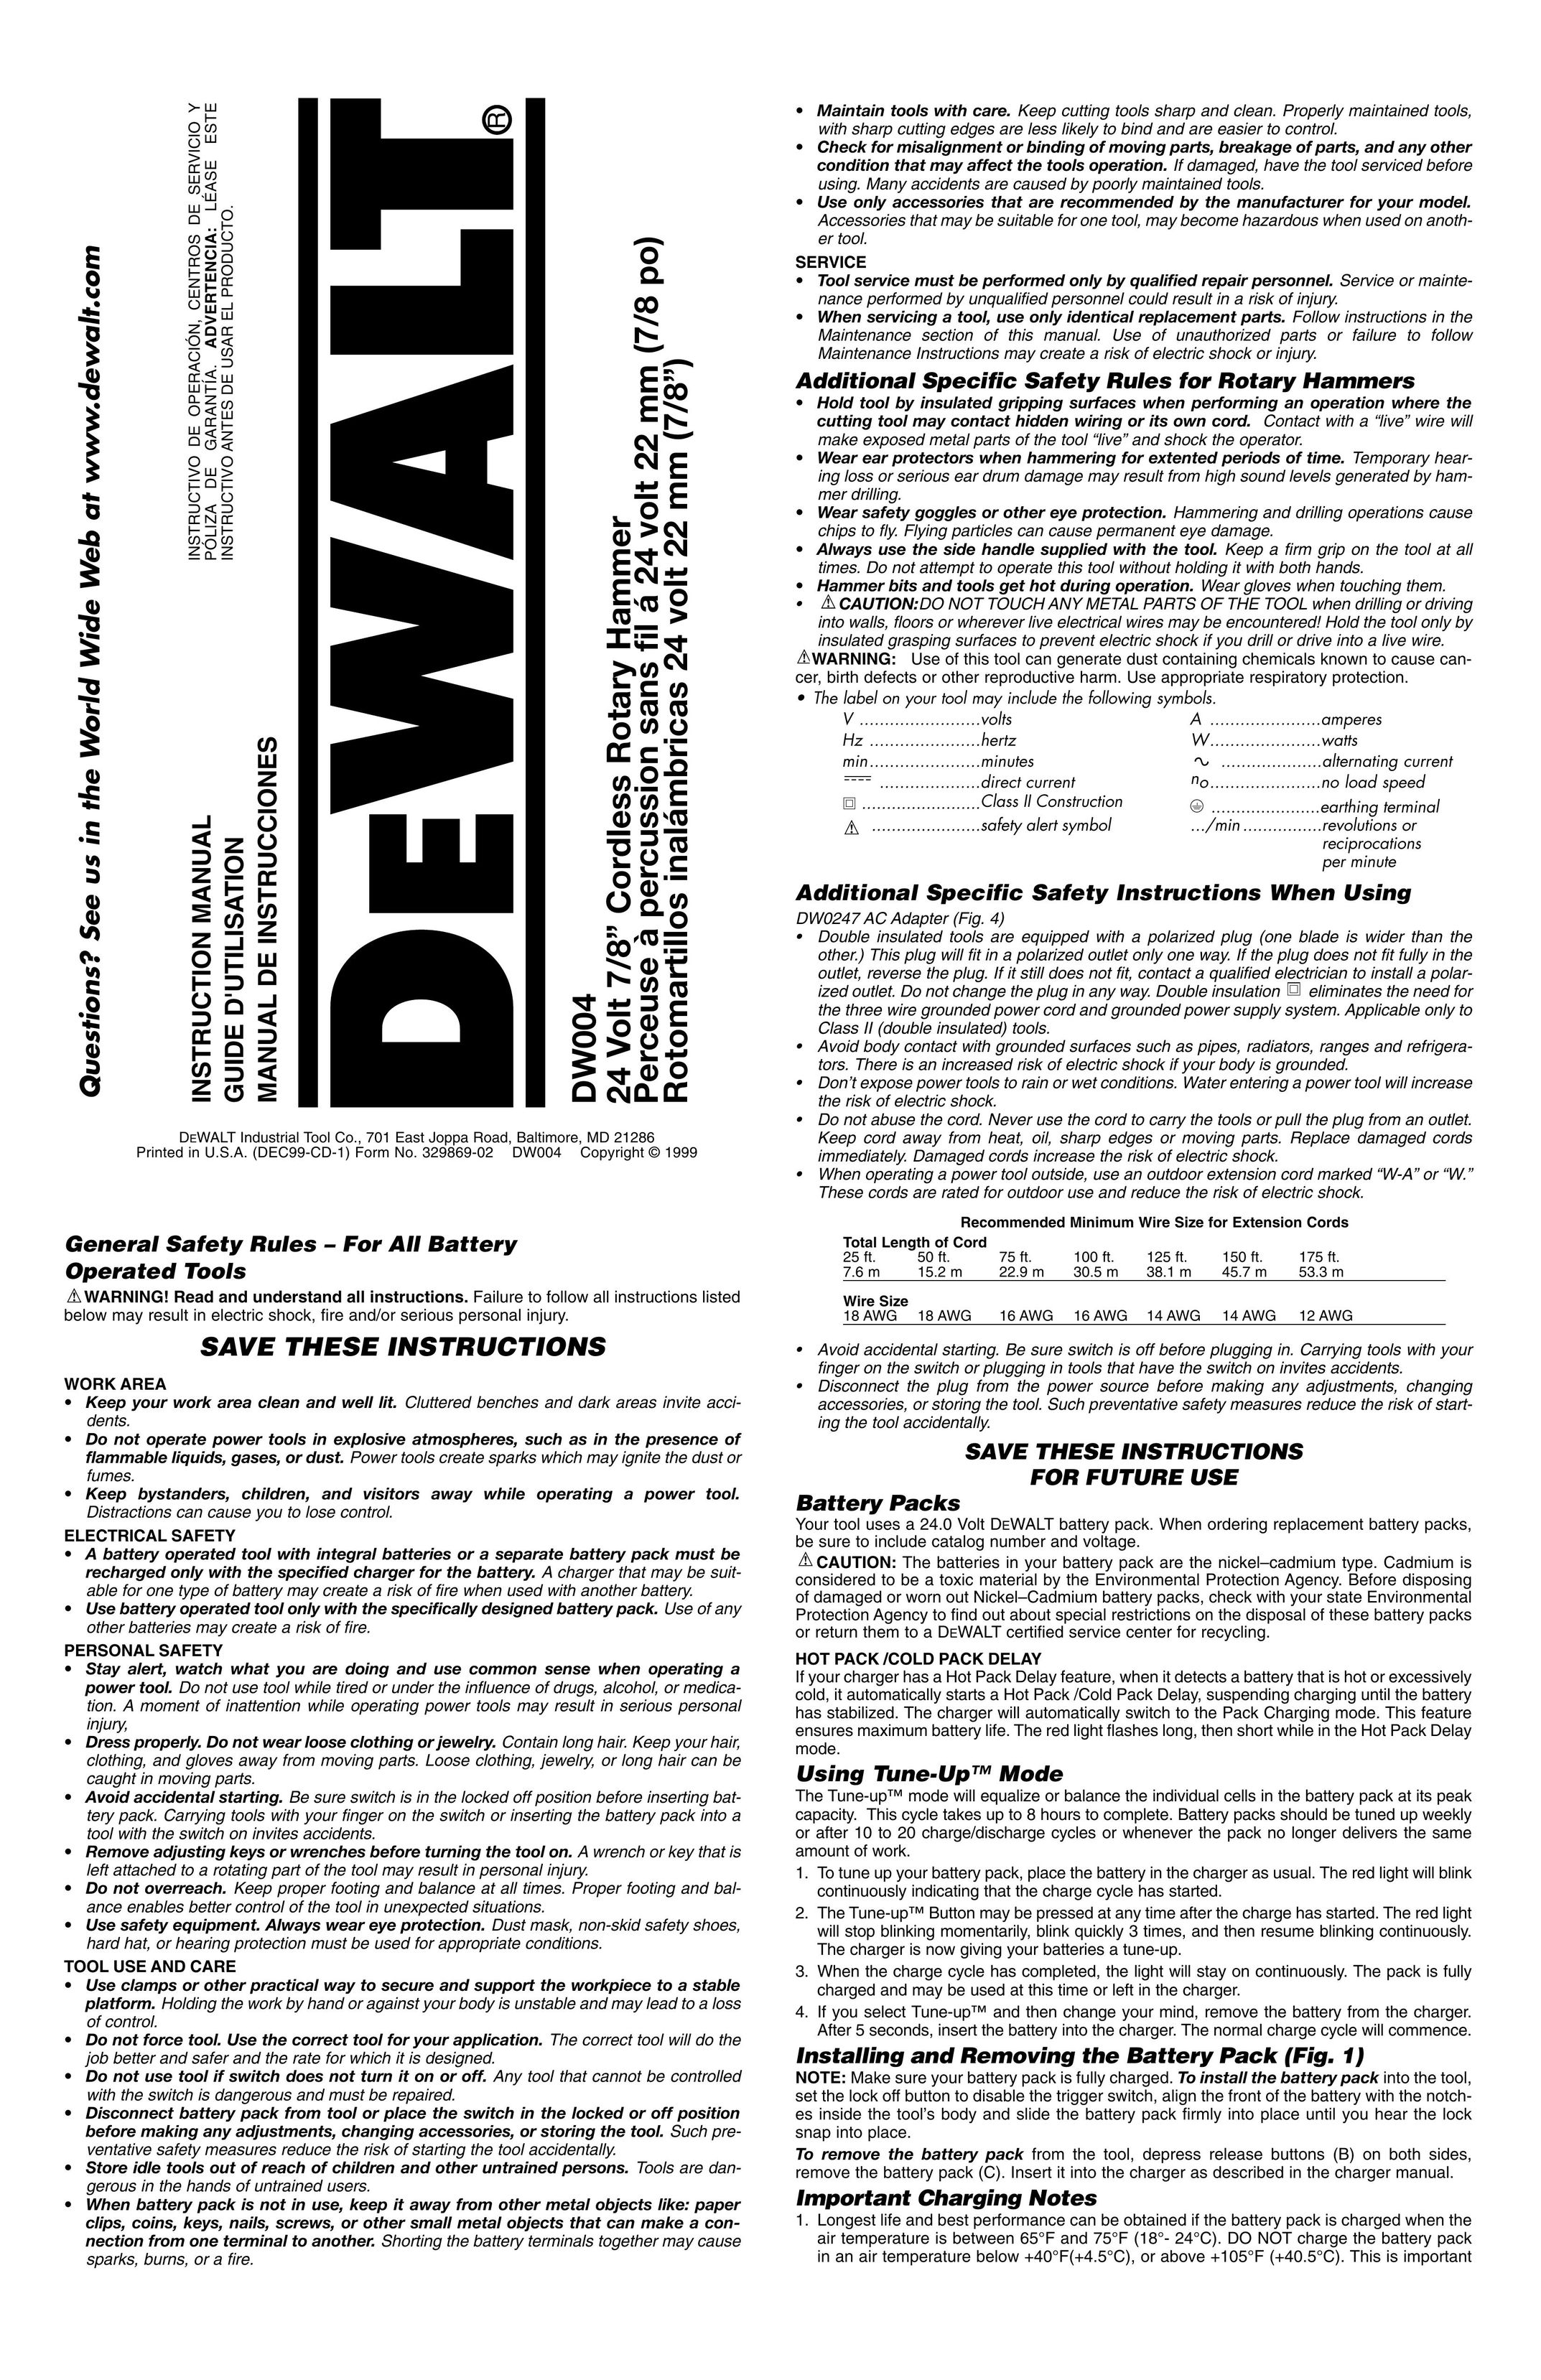 DeWalt DW004 Power Hammer User Manual